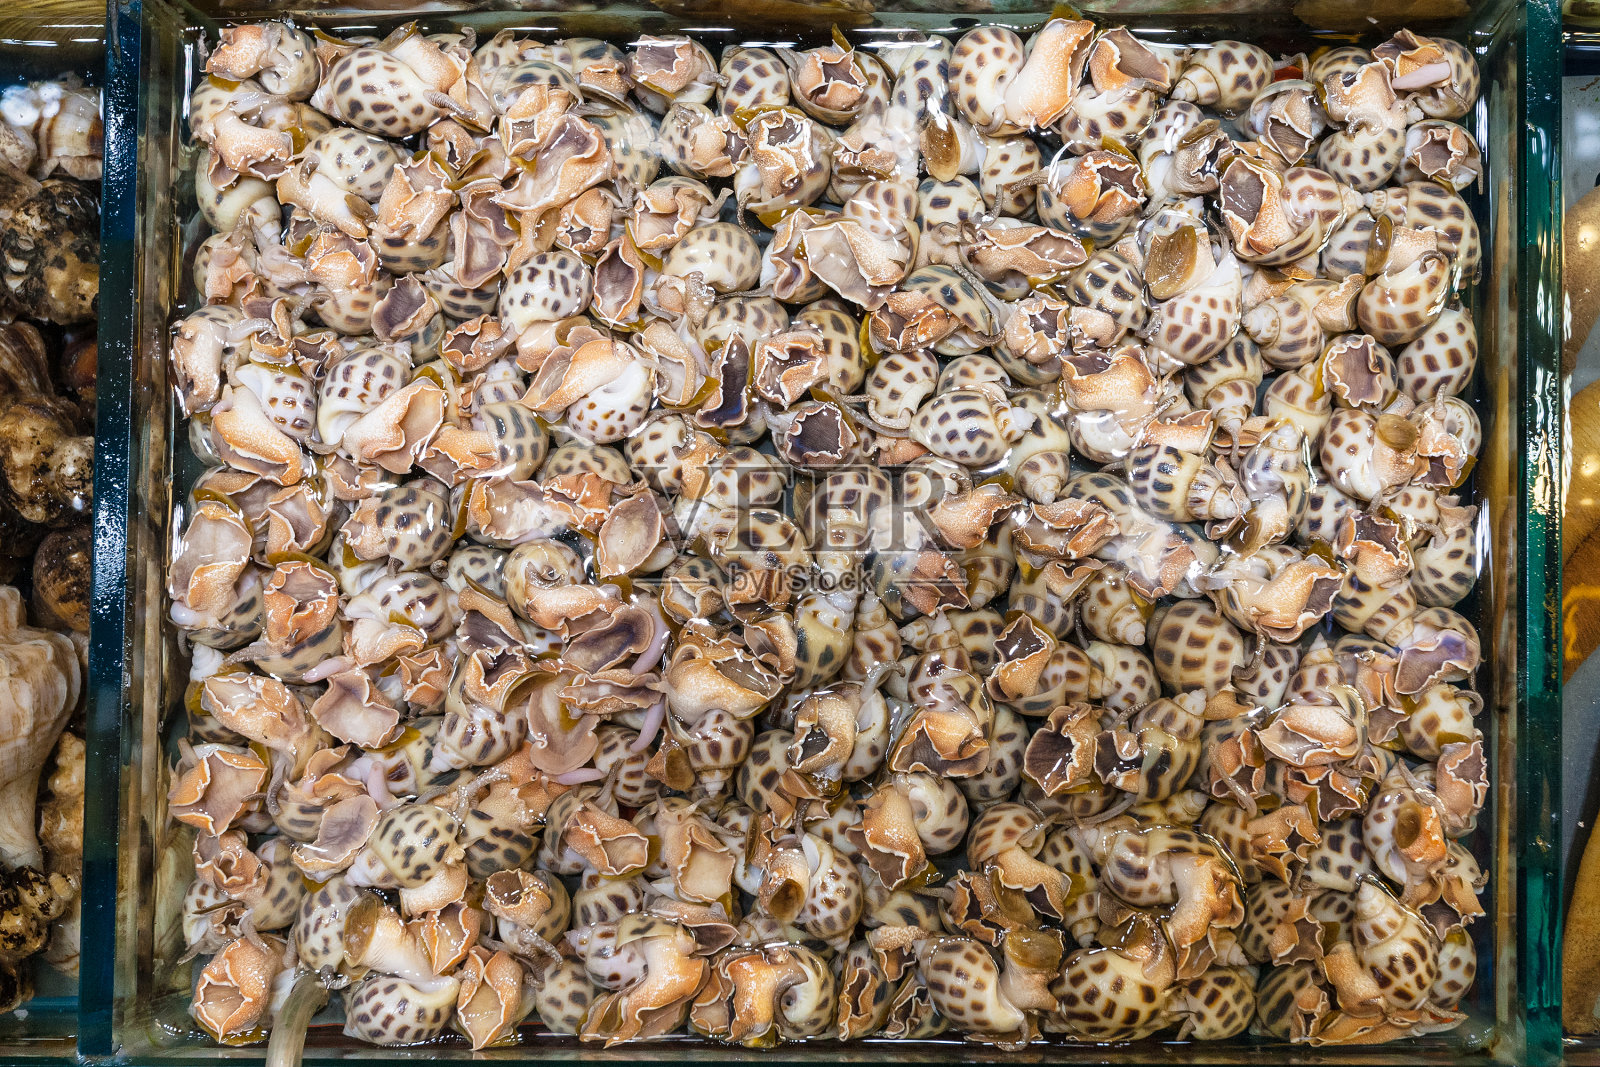 广州的鱼市里有很多水螺照片摄影图片